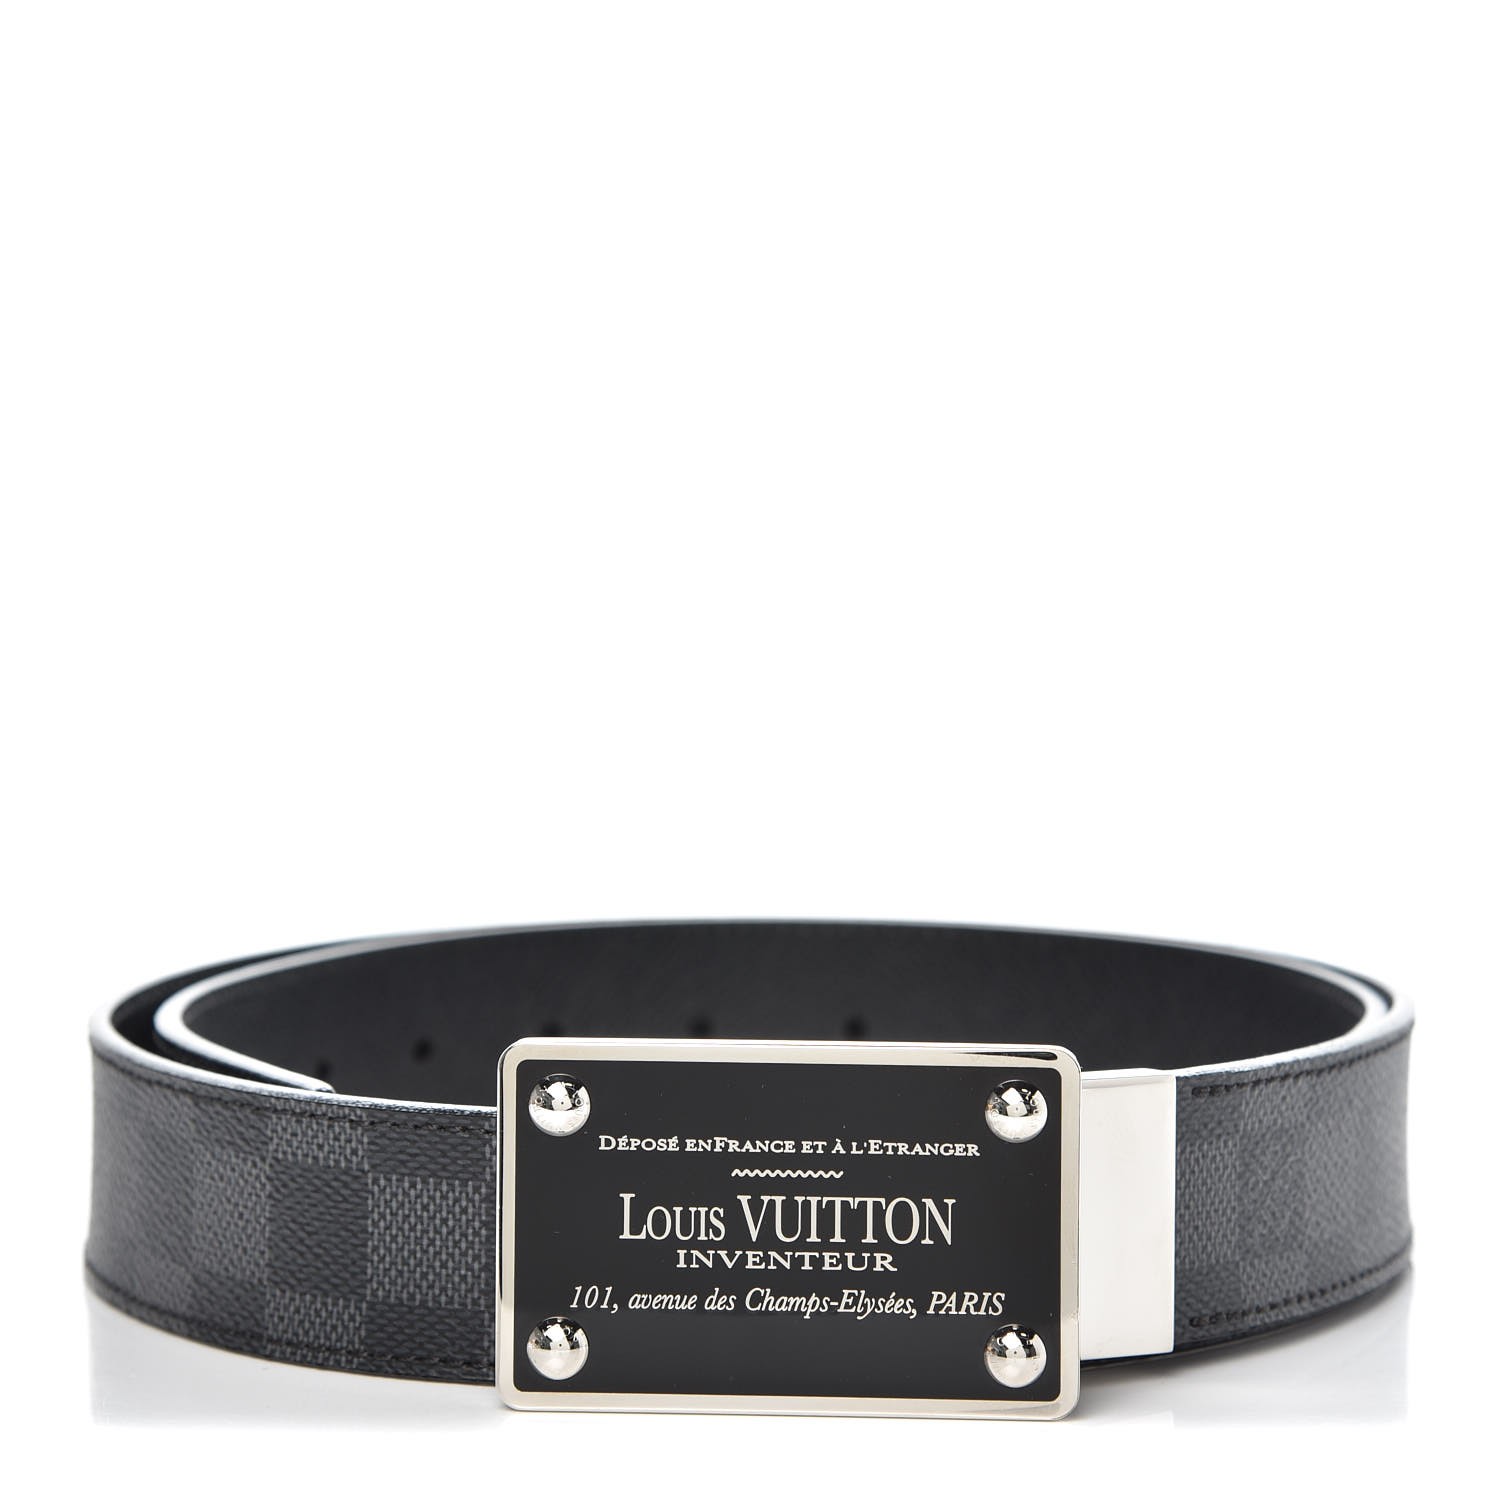 Louis Vuitton Louis Vuitton Reversible Belt Size 95/38 40mm